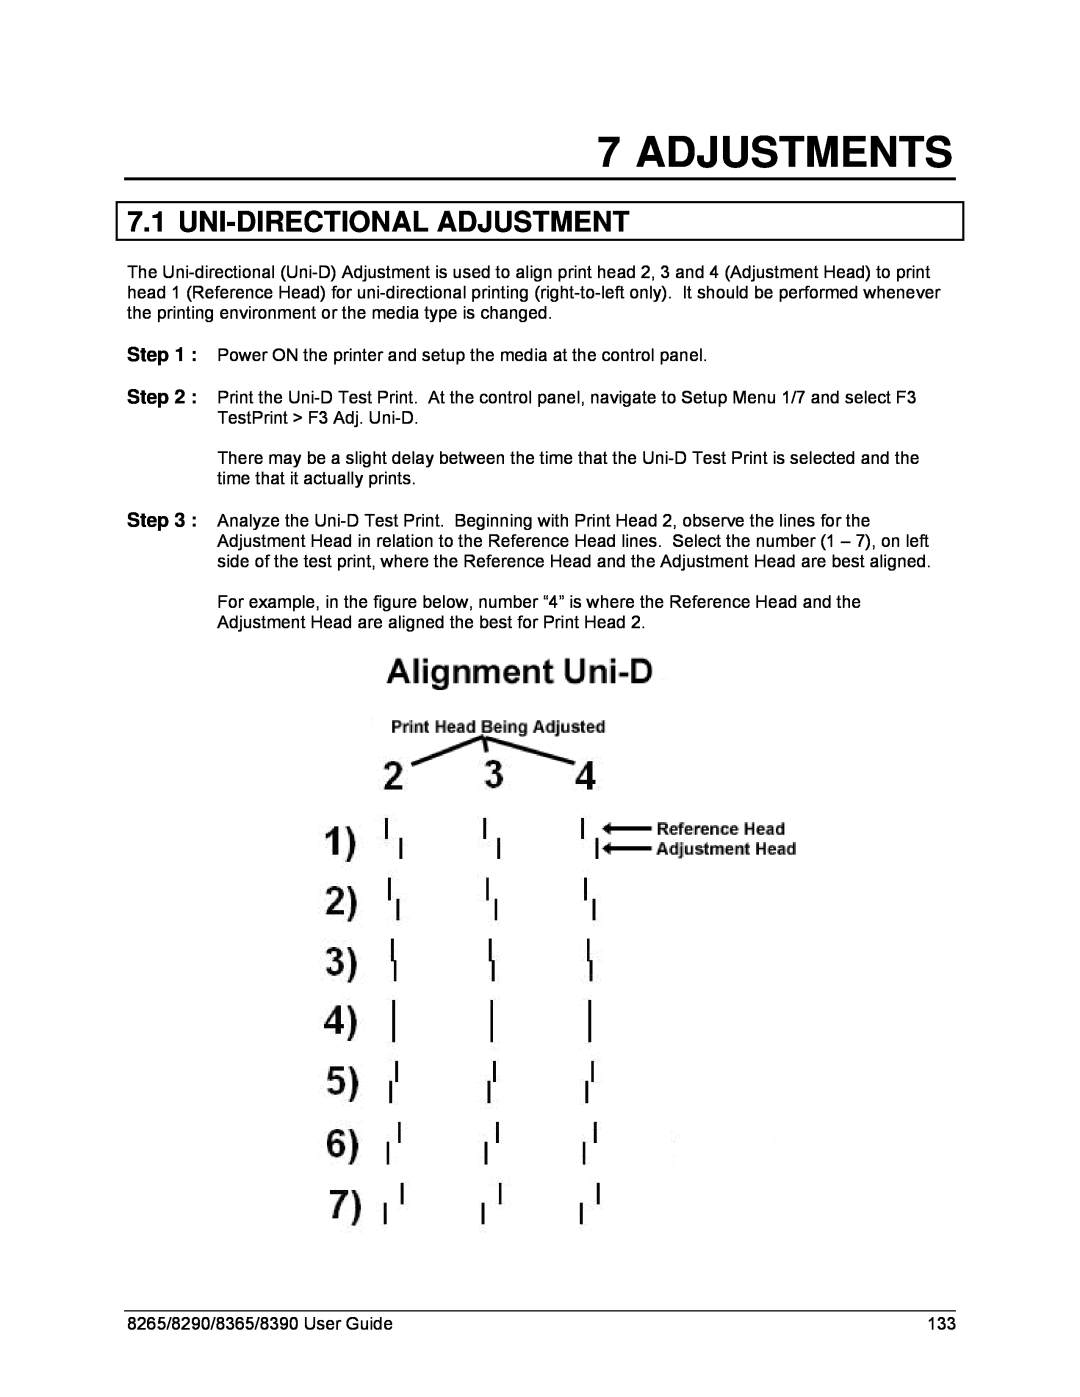 Xerox 8265, 8290, 8390, 8365 manual Adjustments, Uni-Directional Adjustment 